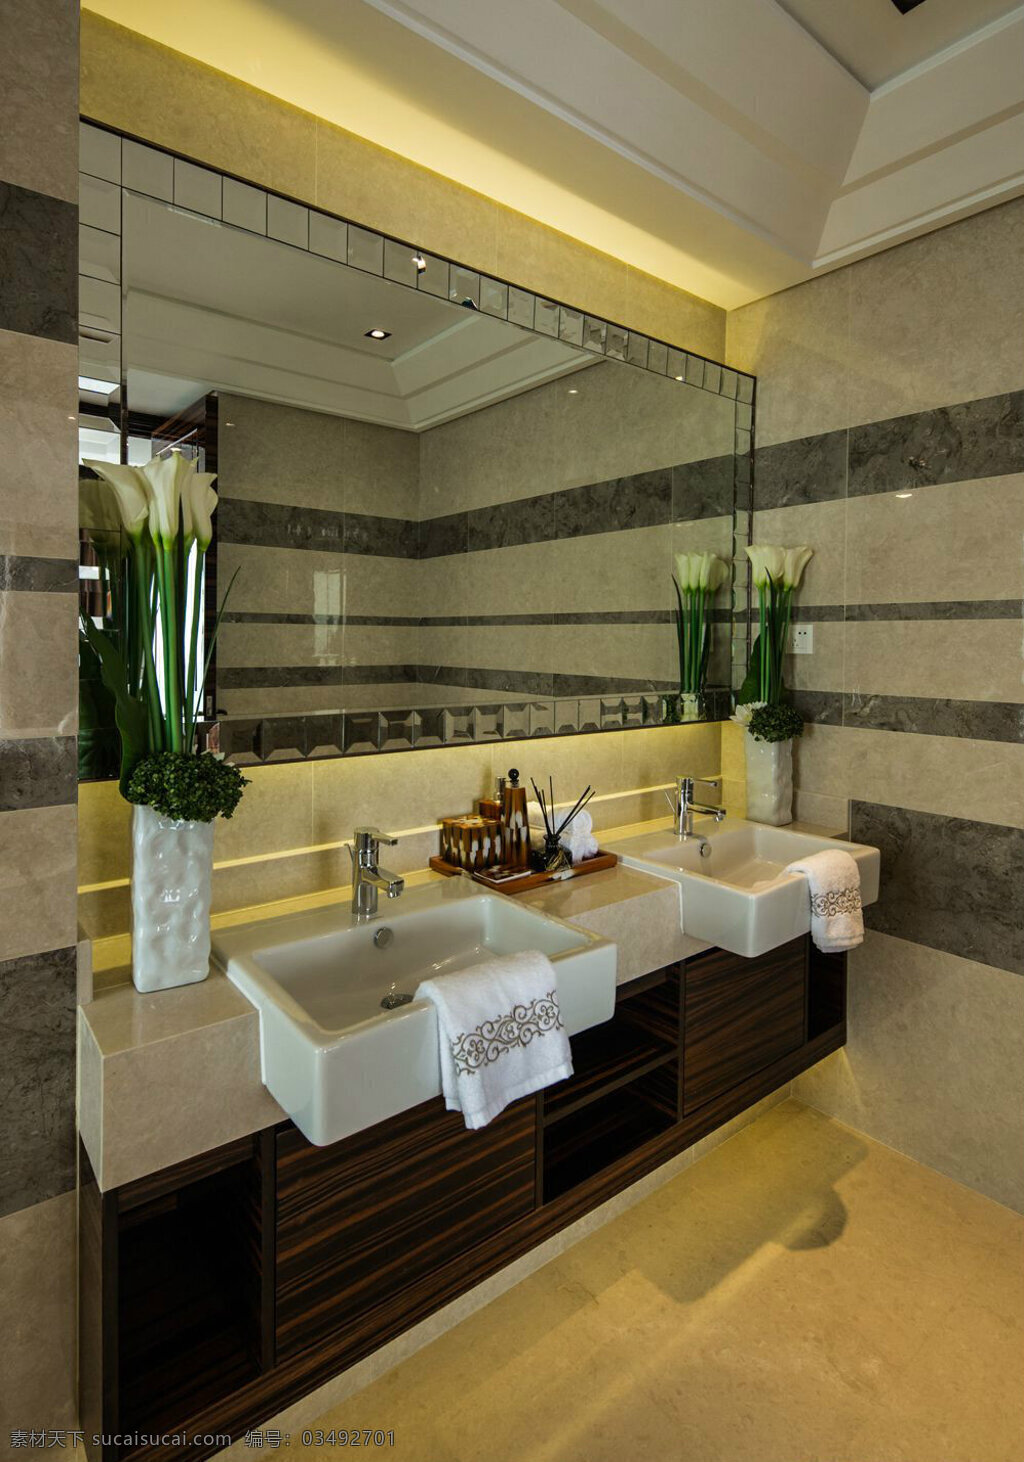 现代 奢华 欧式 浴室 洗脸 台 装修 效果图 大气 浴室装修